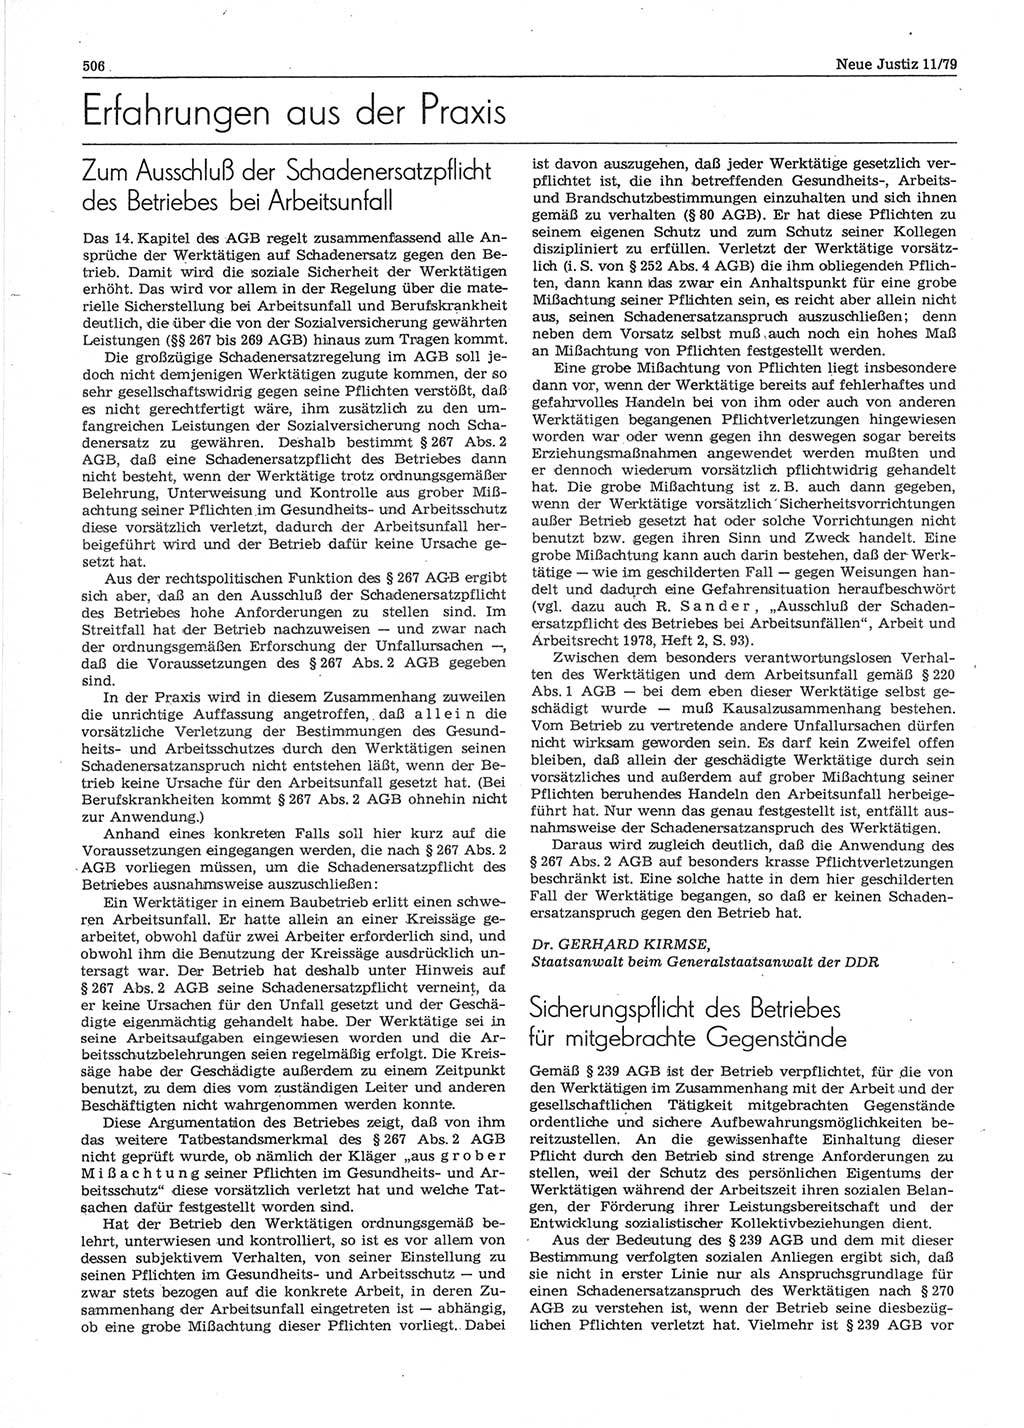 Neue Justiz (NJ), Zeitschrift für sozialistisches Recht und Gesetzlichkeit [Deutsche Demokratische Republik (DDR)], 33. Jahrgang 1979, Seite 506 (NJ DDR 1979, S. 506)